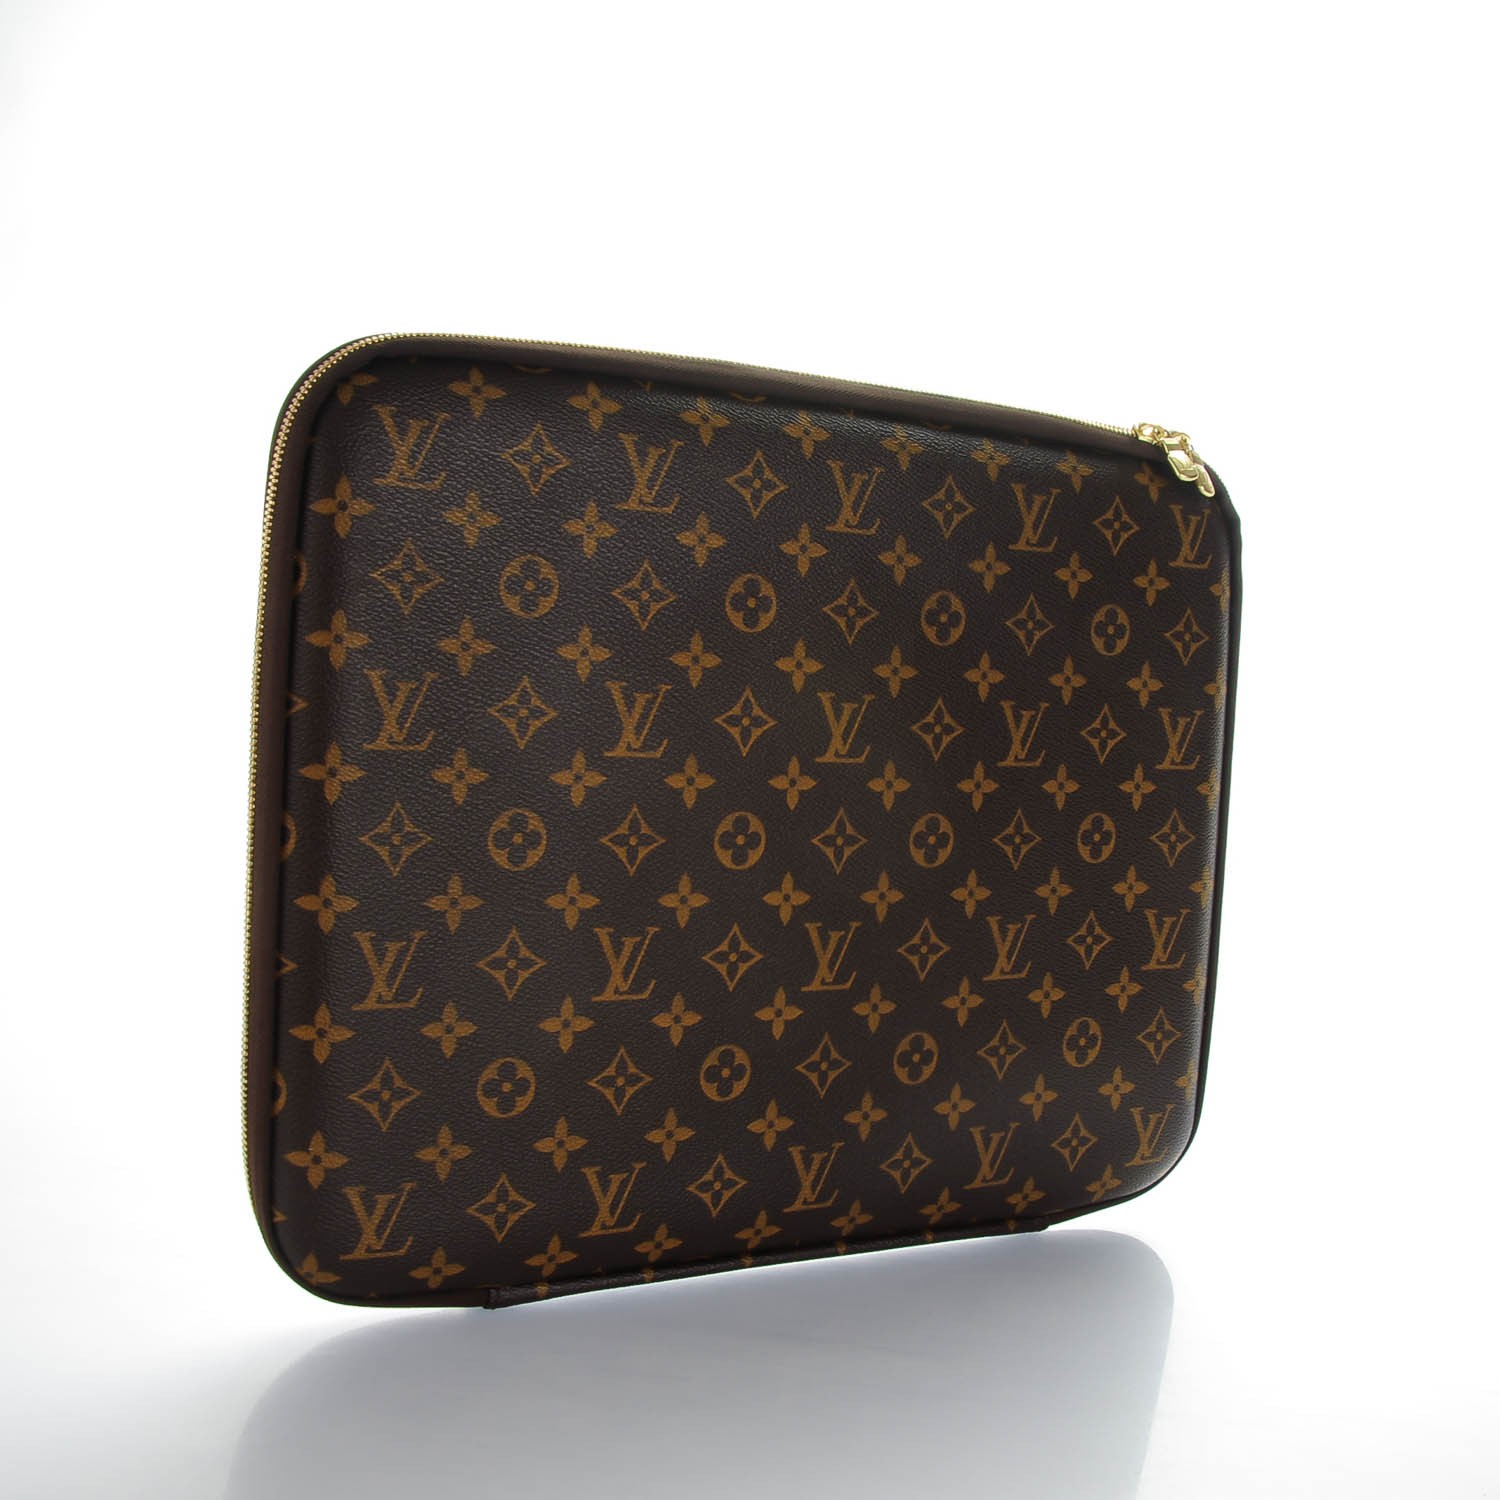 Authentic Luxury Bags - LVDEE